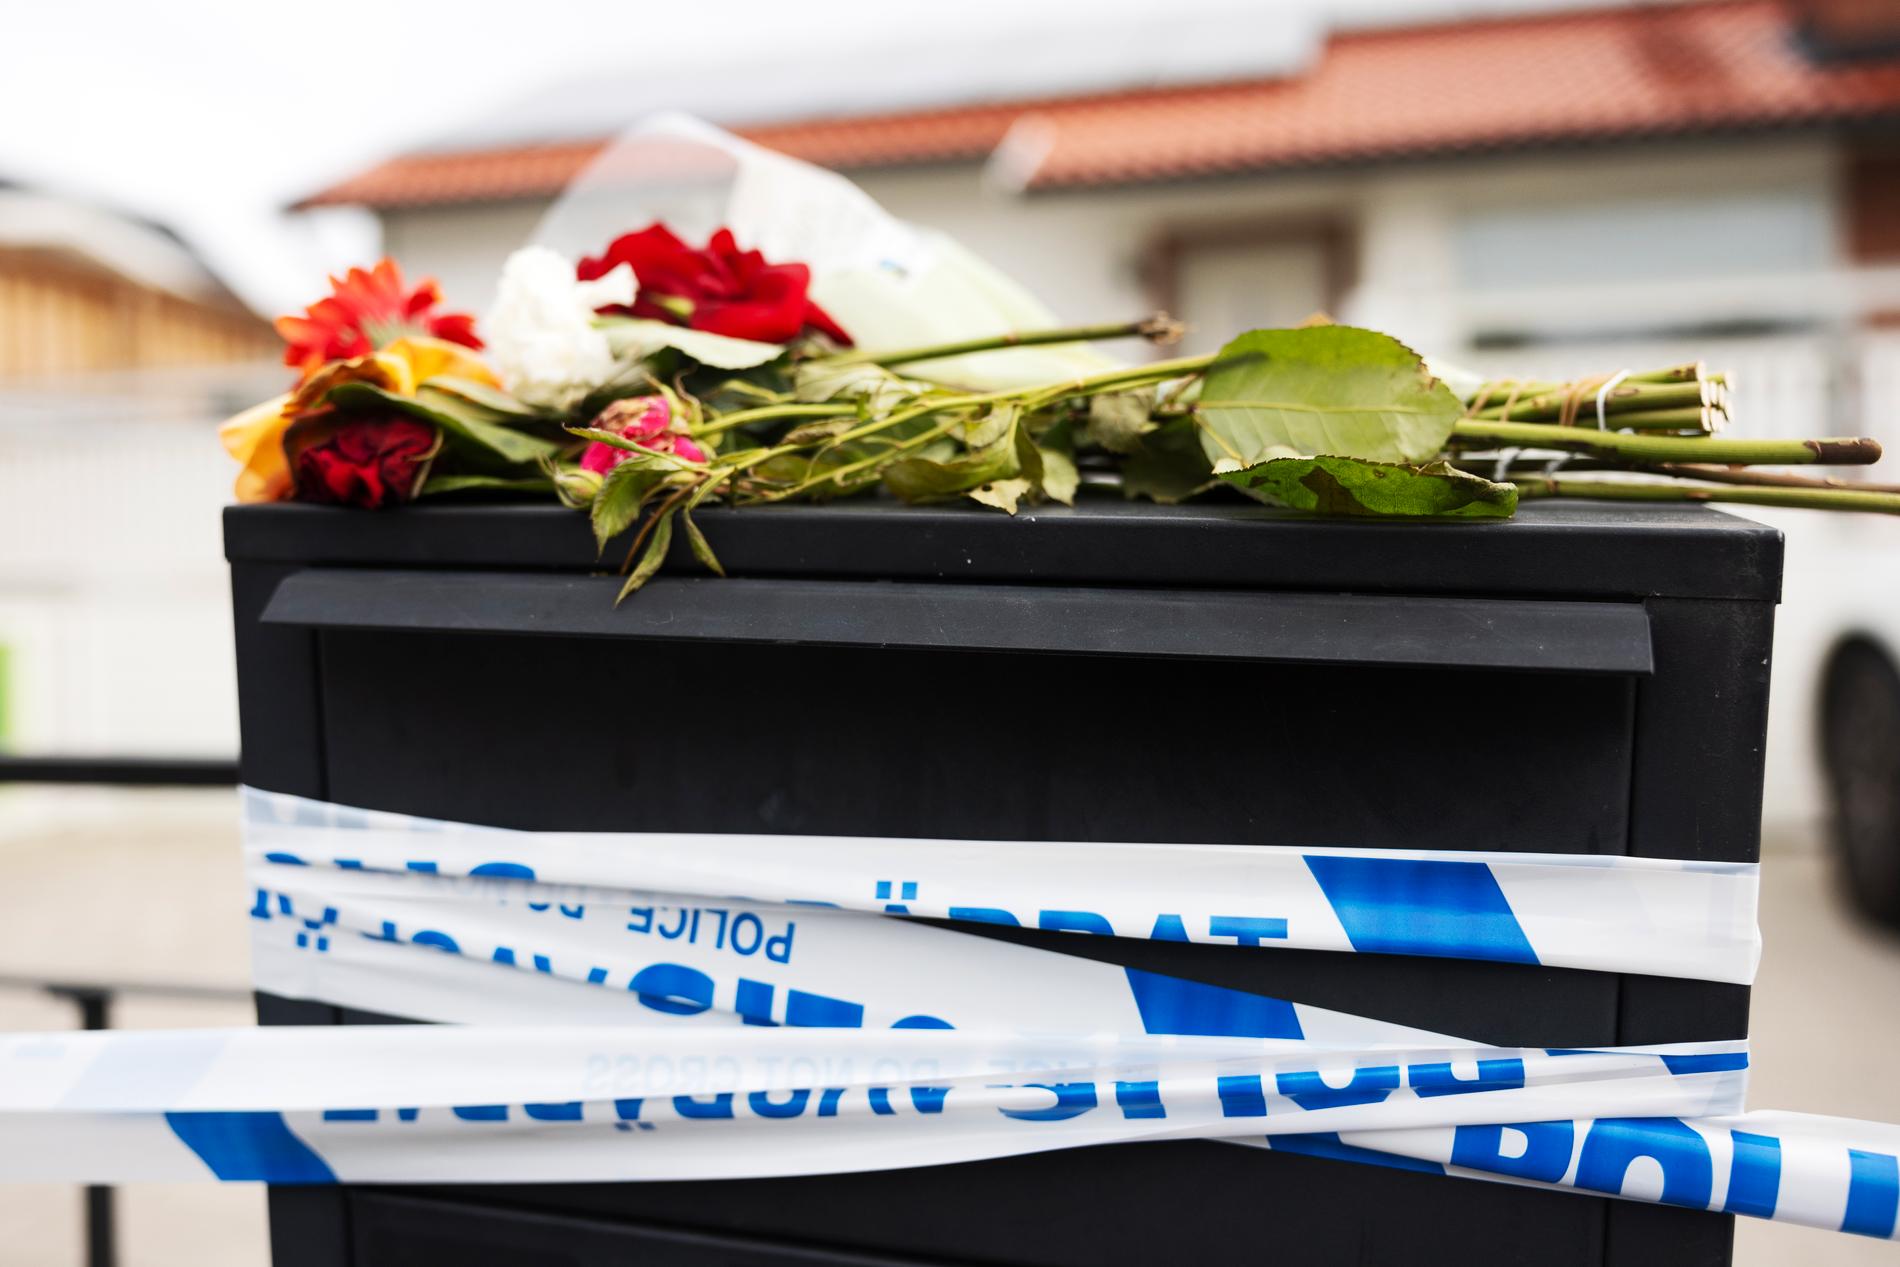 Våldsvågen i Sverige inleddes med mordet på en kvinna i 60-årsåldern. Hon var mamma till Ismail Abdo, en nätverkskriminell man som ligger i krig med Foxtrotledaren Rawa Majid. 